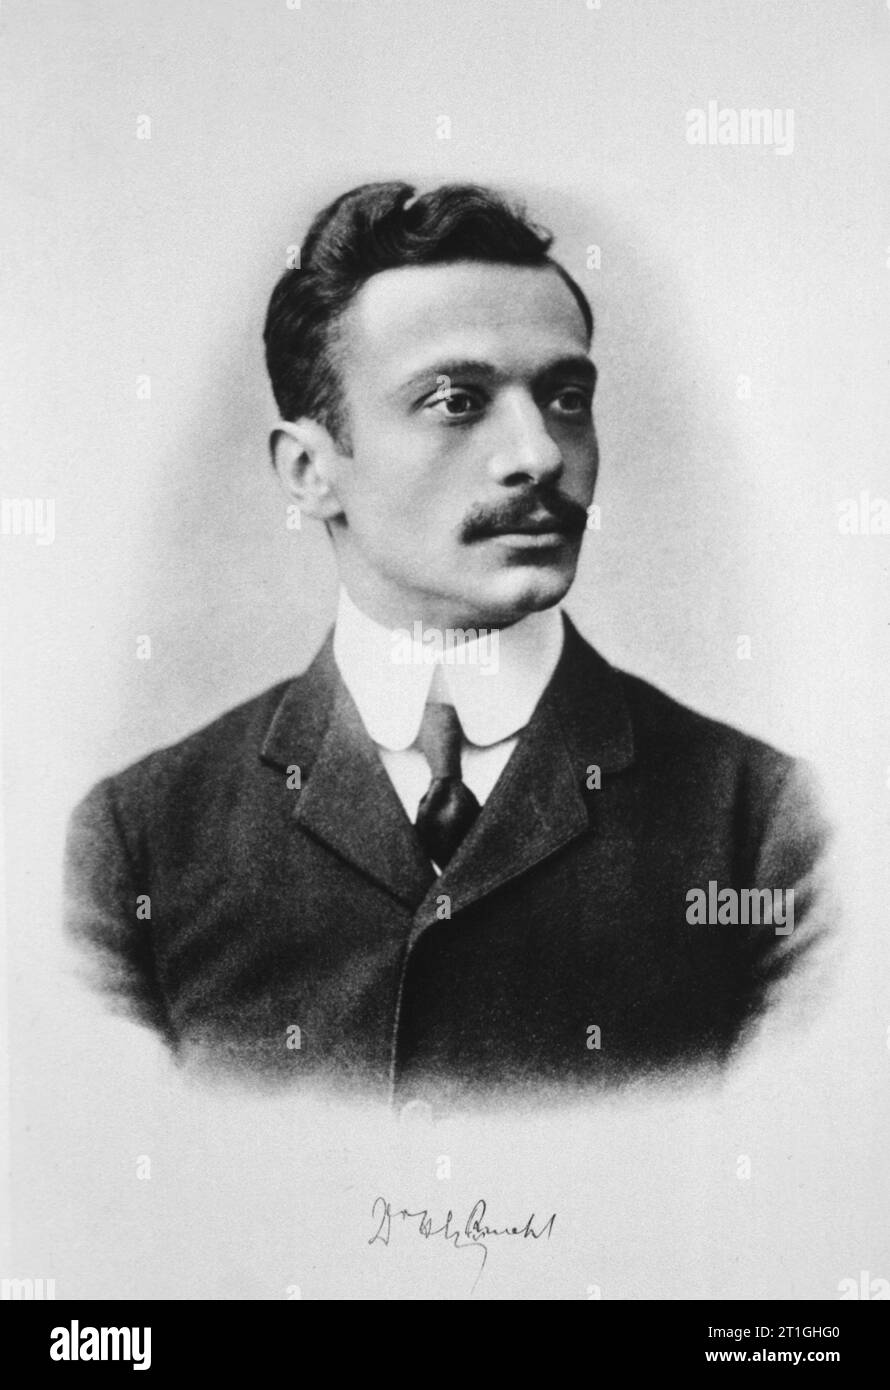 1910 c., ÖSTERREICH : der österreichische Radiologe und Wissenschaftler GUIDO HOLZKNECHT ( 1872-1931). Unbekannter Fotograf. - GESCHICHTE - FOTO STORICHE - RADIOLOGISM - RADIOLOGO - RADIOLOGIA - Röntgen - RAGGI X - scienziato - Wissenschaftler - DOTTORE - MEDICINA - Medizin - SCIENZA - WISSENSCHAFT - SCIENZIATO - Porträt - Rituratto - Schnurrbart - baffi - Kragen - Kragen - Kragen - Kragen --- Archivio GBB Stockfoto